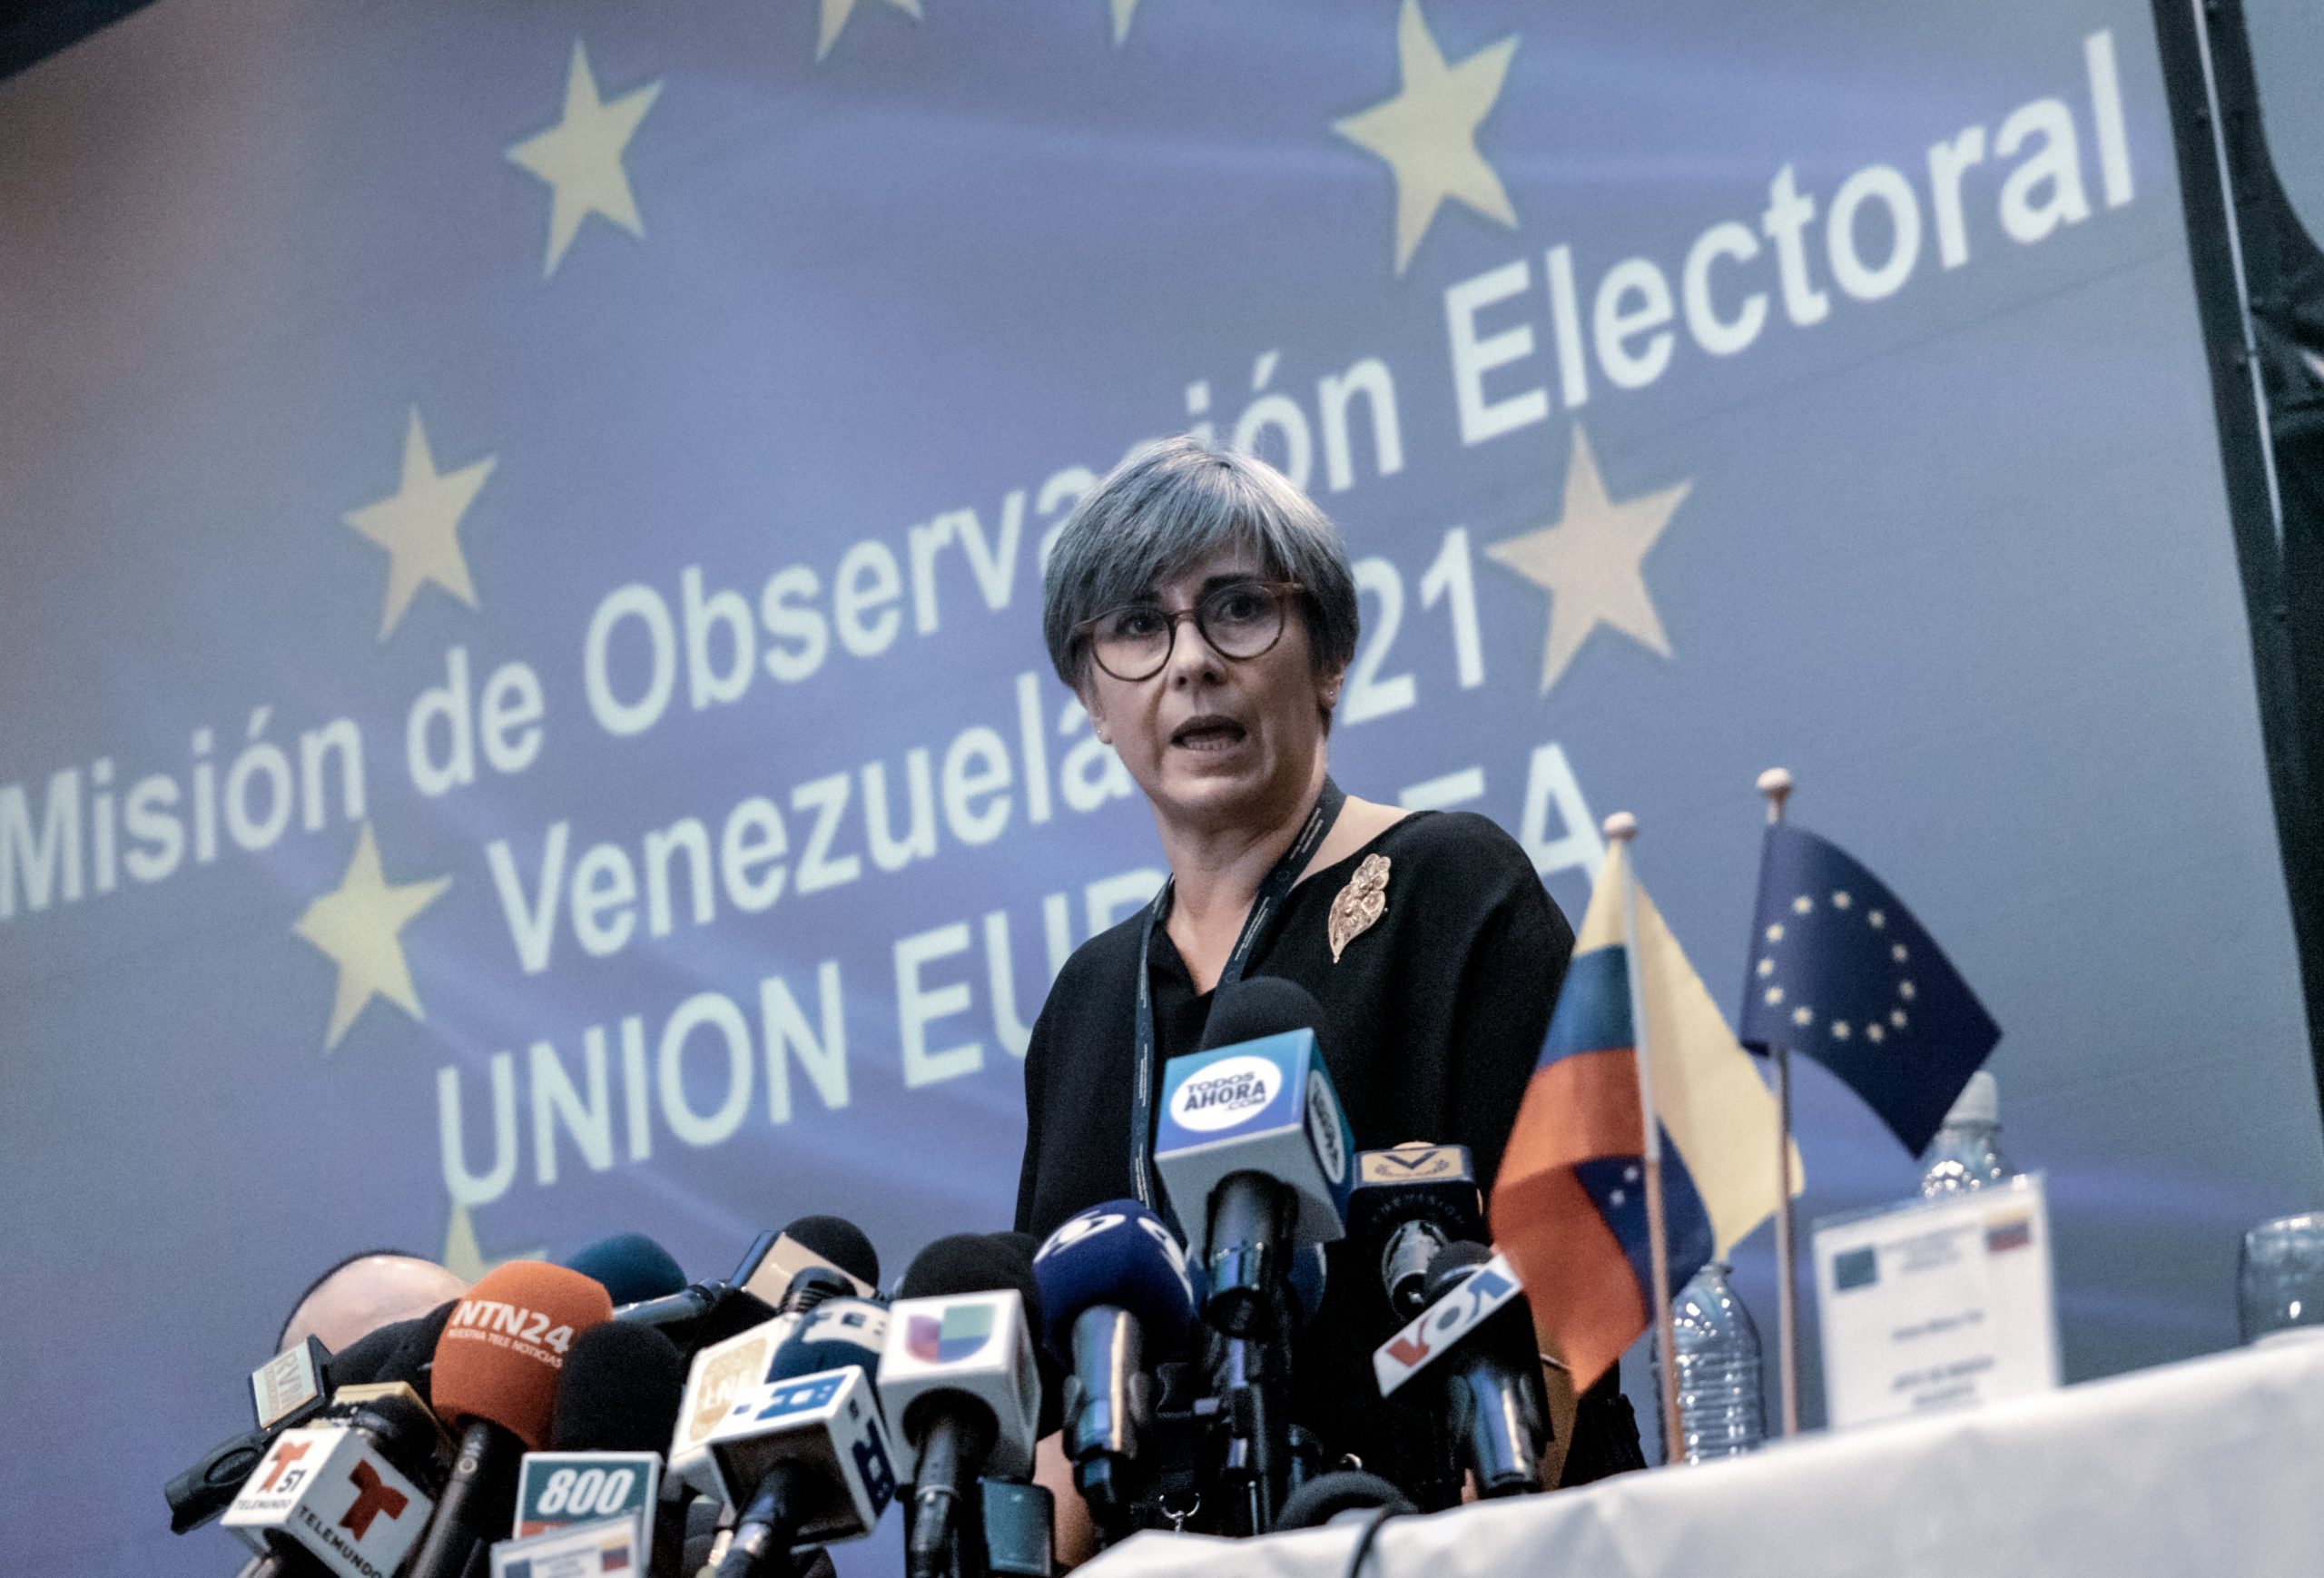 Misión UE Venezuela electoral